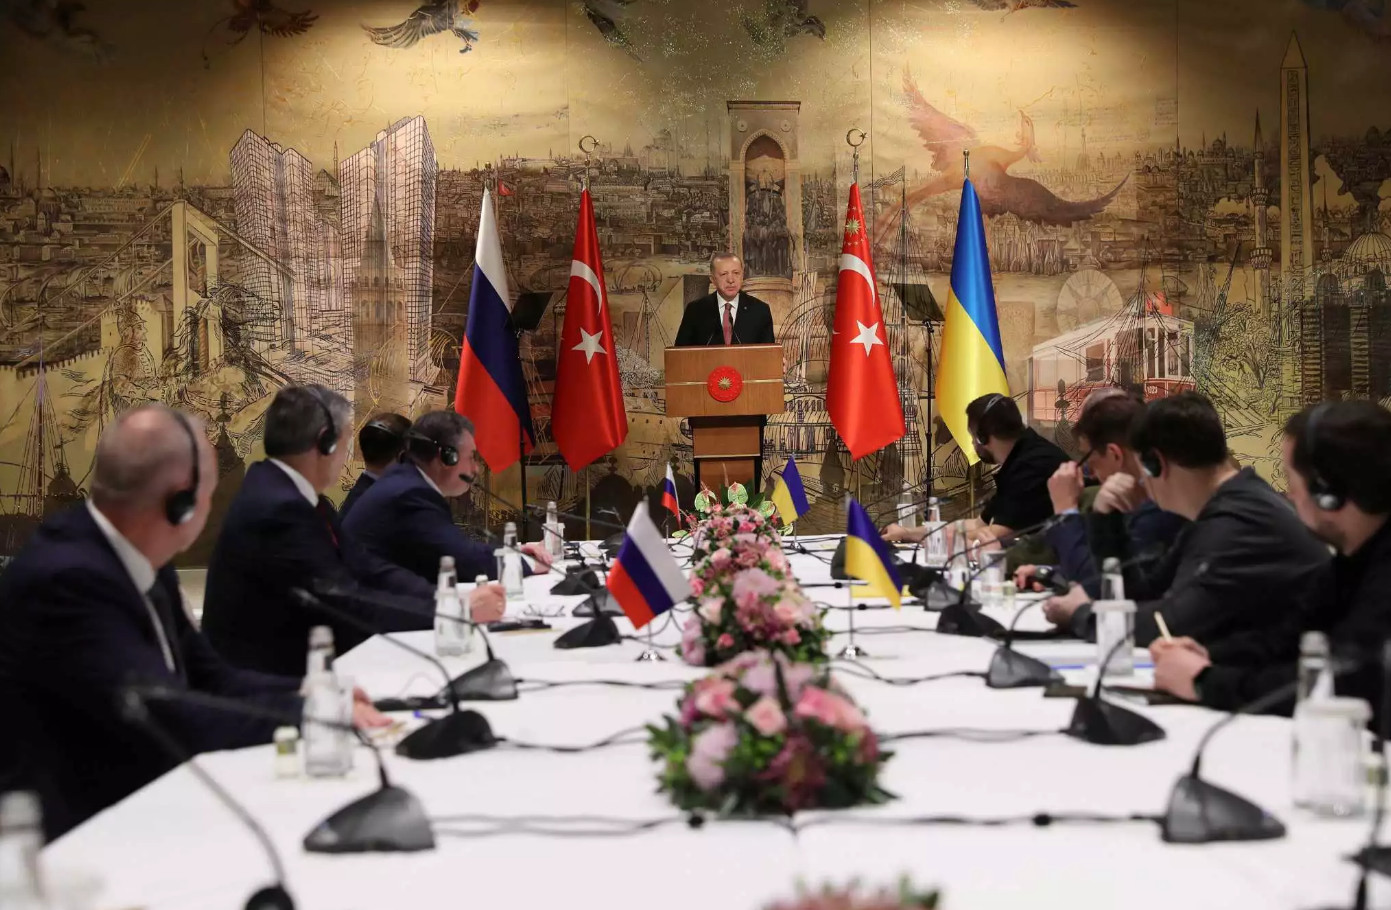 Πόλεμος στην Ουκρανία: Ο Ερντογάν καλωσόρισε τις αντιπροσωπείες Κιέβου και Μόσχας - Ξεκινούν οι συνομιλίες